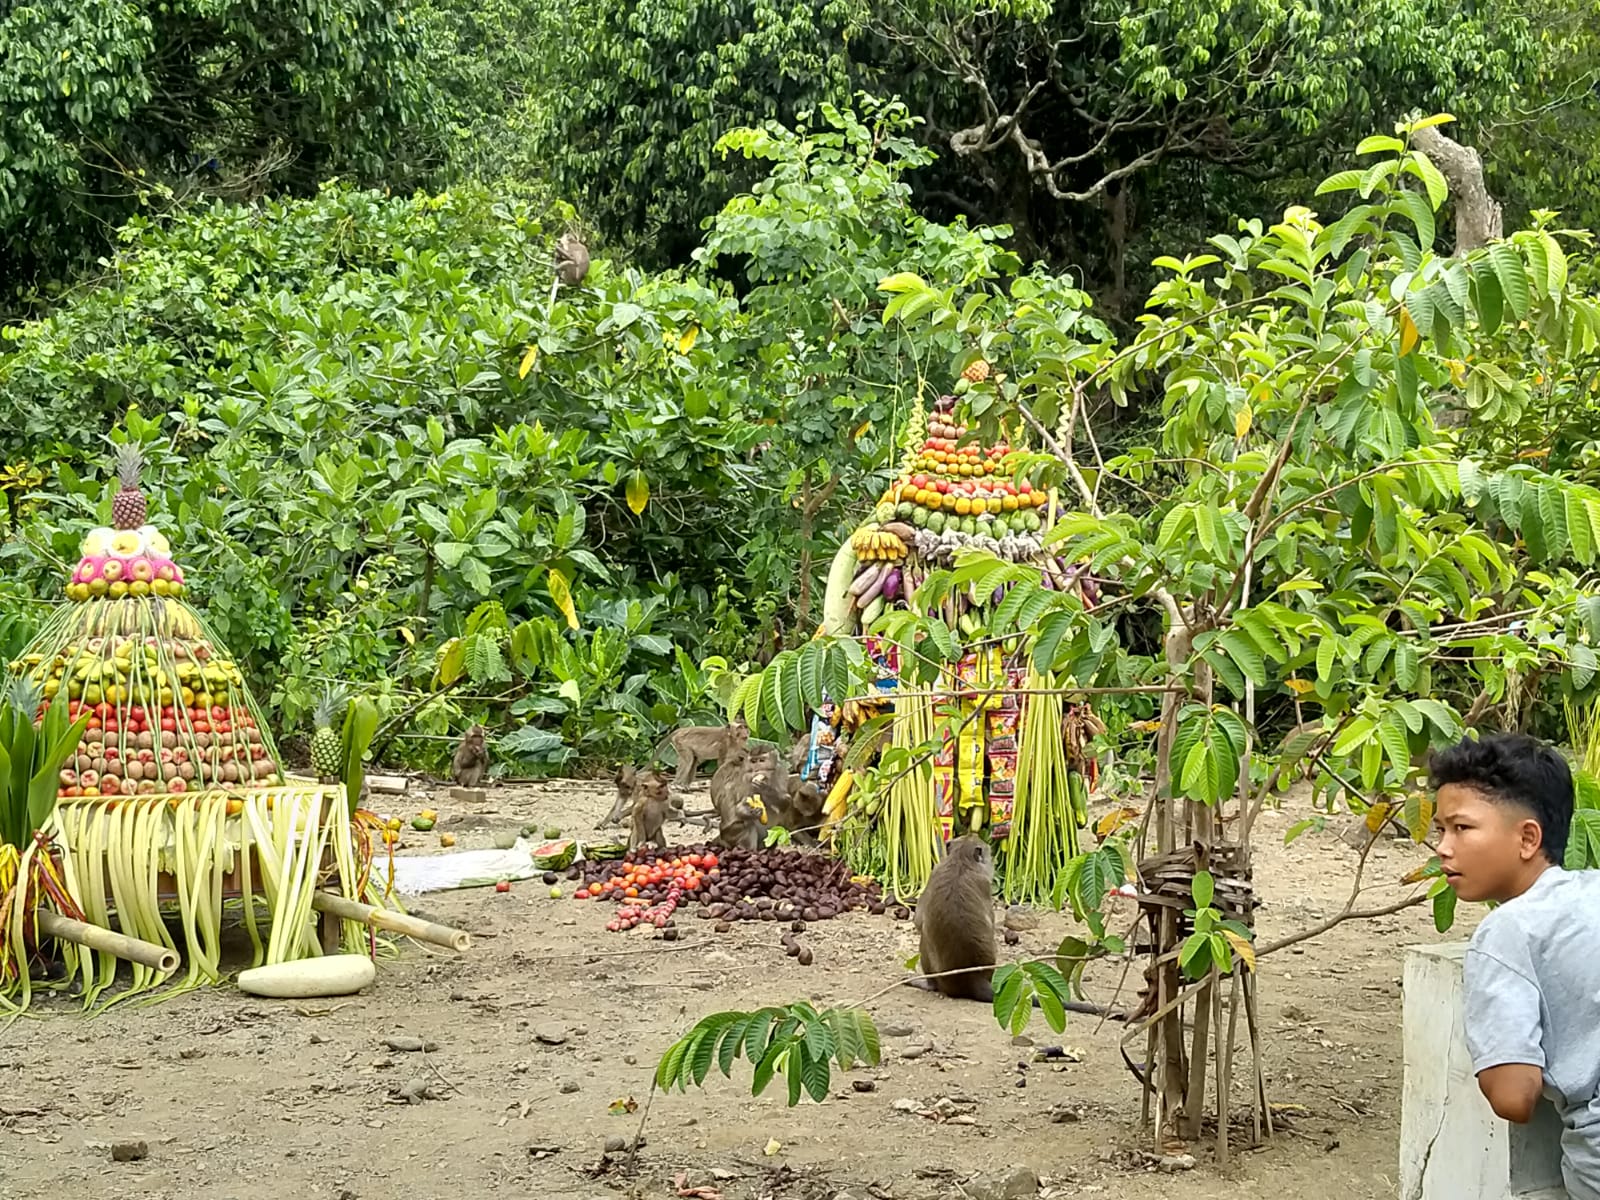 Festival Rewanda Bojana Digelar di Desa Cikakak, Banyumas, Tradisi Memberi Makan Kera Ekor Panjang